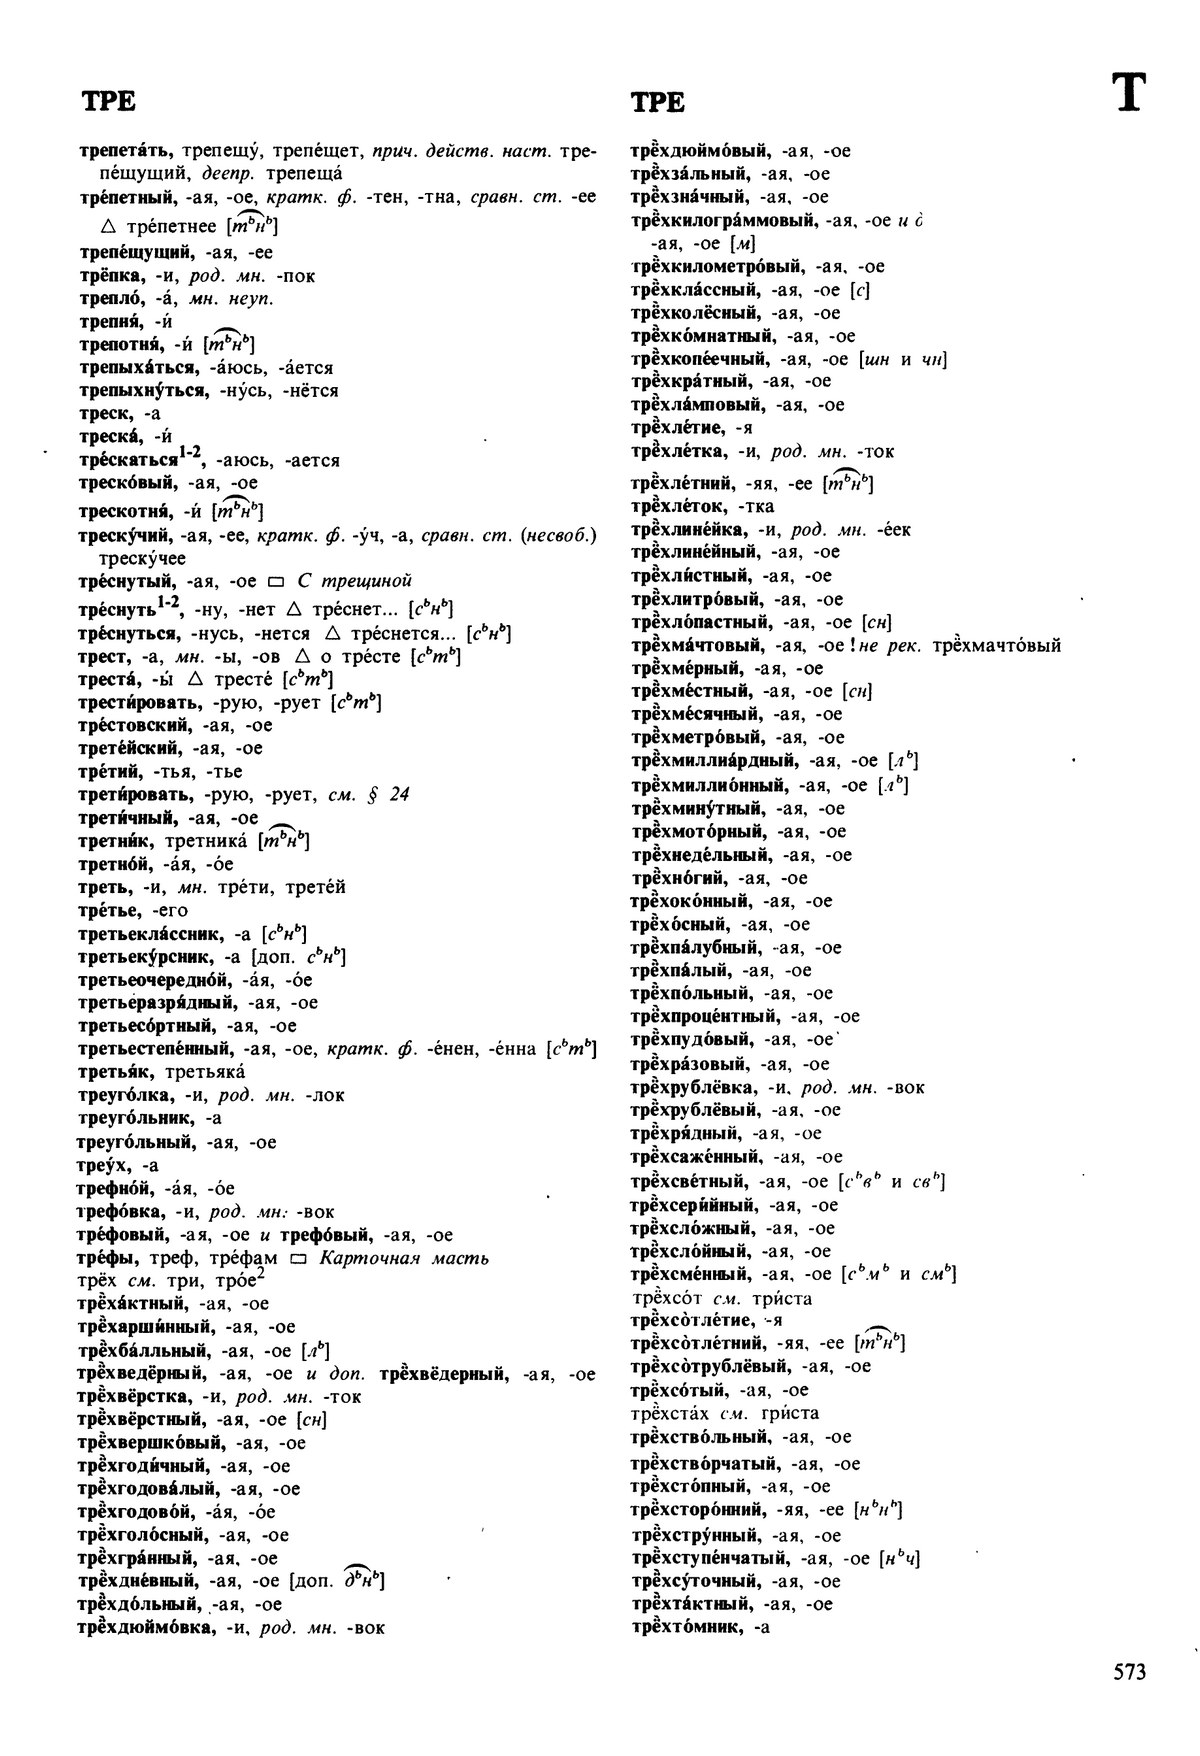 Фотокопия pdf / скан страницы 573 орфоэпического словаря под редакцией Аванесова (5 издание, 1989 год)